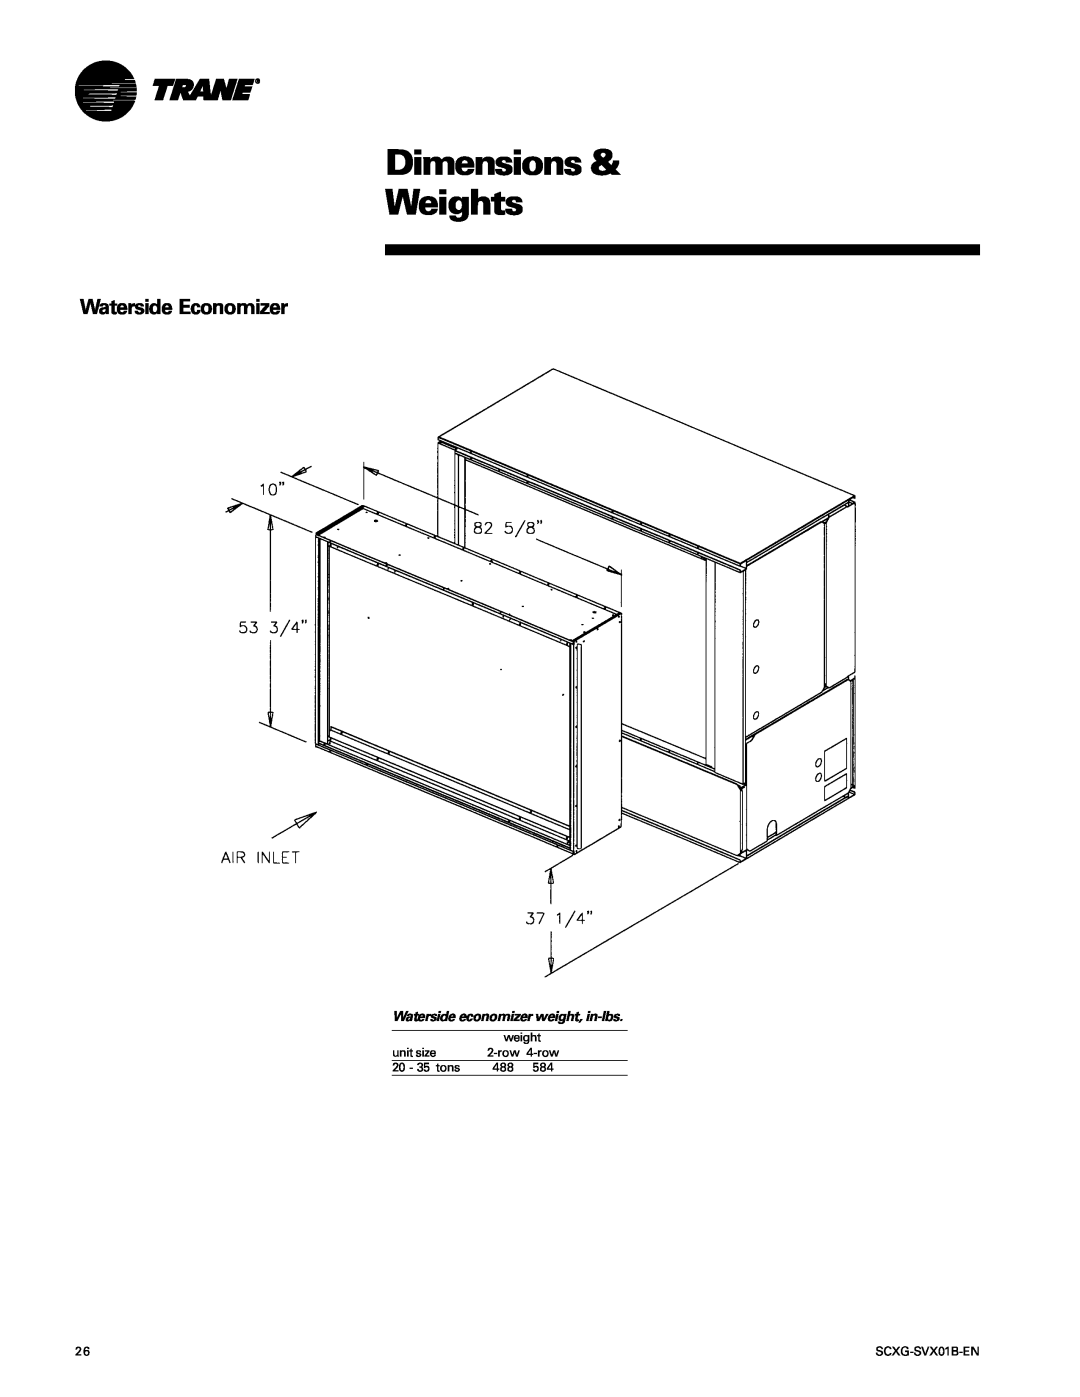 Trane SCXG-SVX01B-EN manual Waterside Economizer, Dimensions & Weights, Waterside economizer weight, in-lbs 